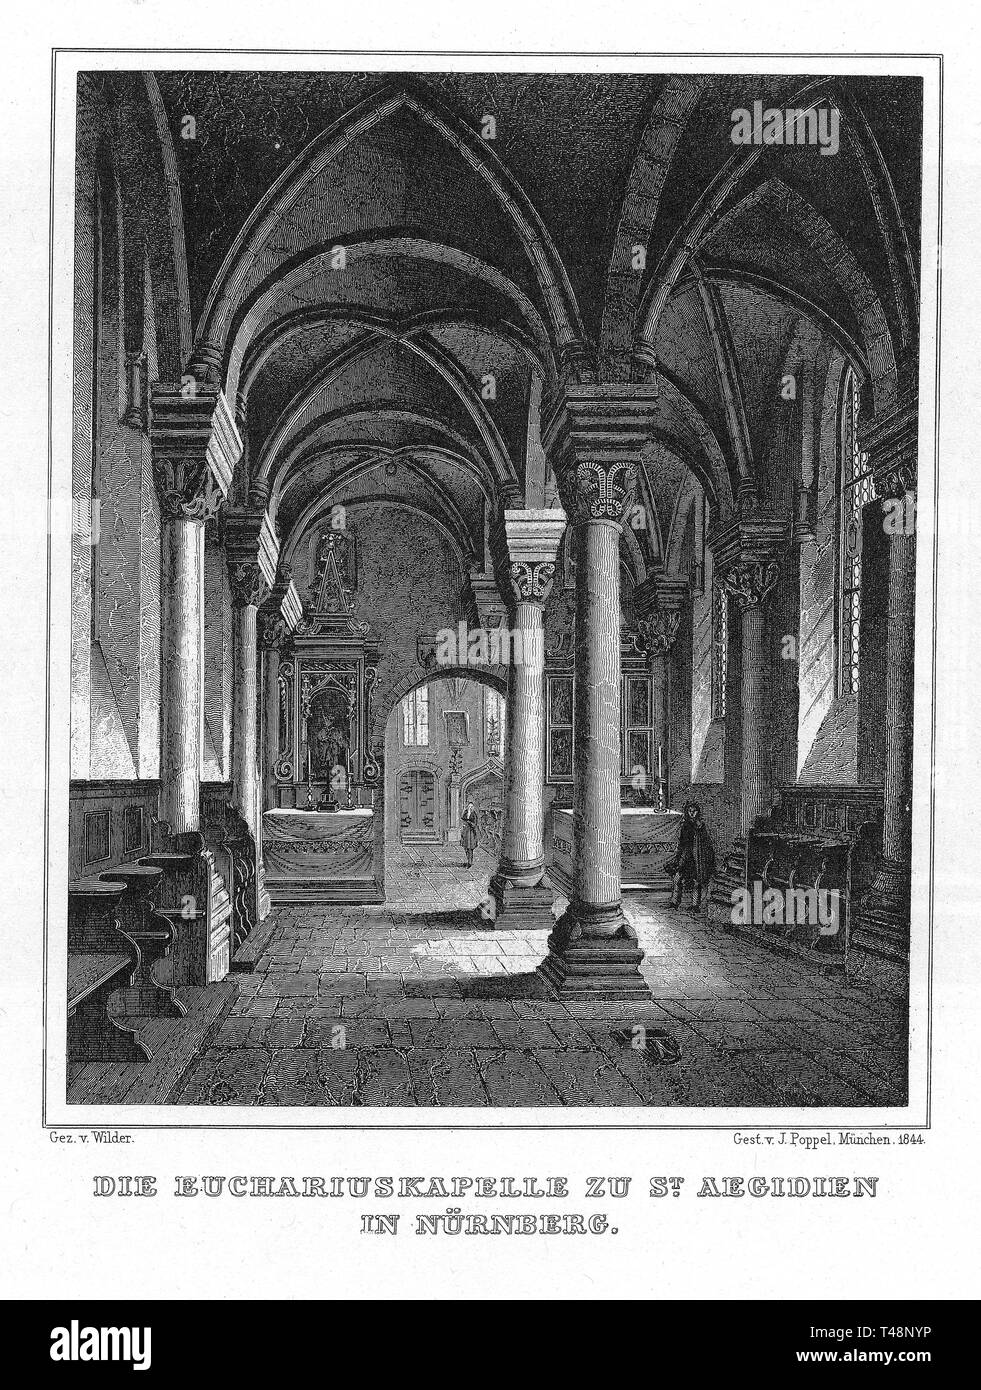 Kapelle in St. eucharius Agidien, Nürnberg, Zeichnung von Wilder, Stahlstich von J. Poppel, 1840-54, Königreich Bayern, Deutschland Stockfoto